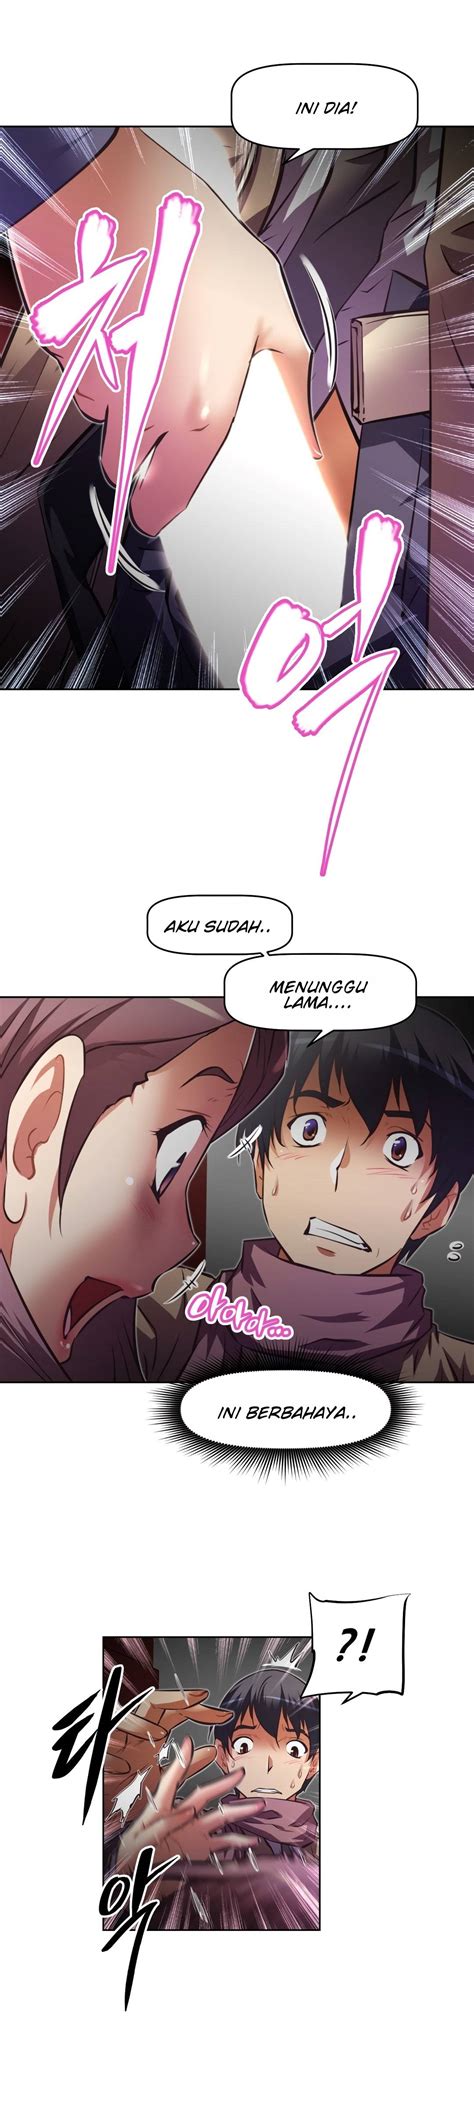 Baca manga brawling go chapter 68 bahasa indonesia terbaru di sekaikomik. Brawling Go Chapter 122